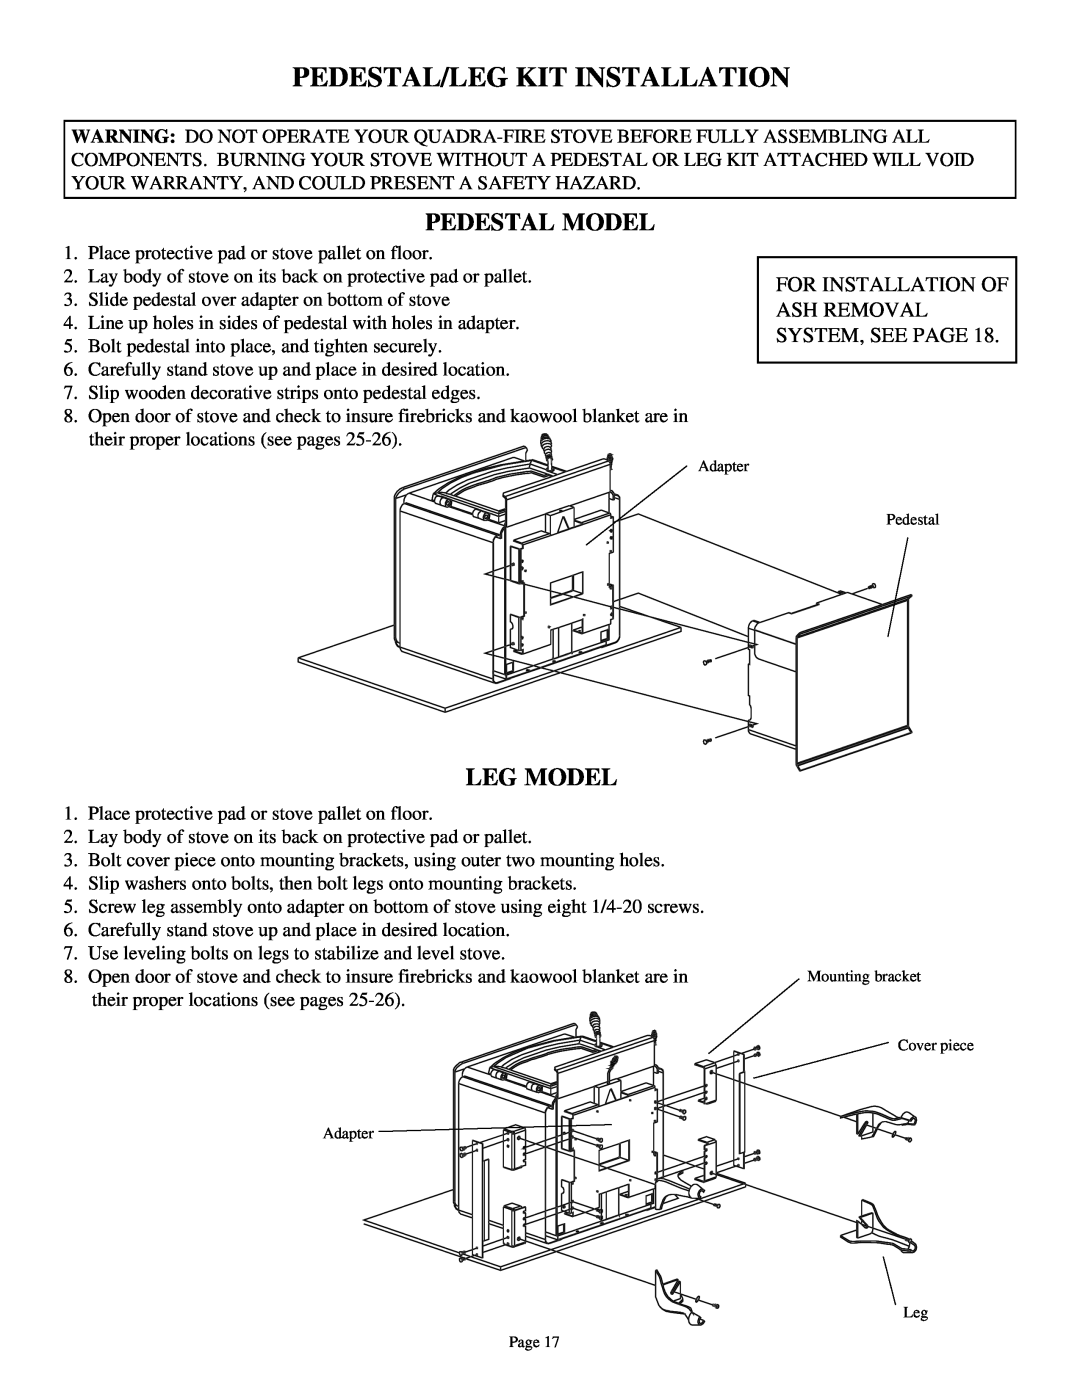 Quadra-Fire 3100 owner manual Pedestal/Leg Kit Installation, Pedestal Model, Leg Model 